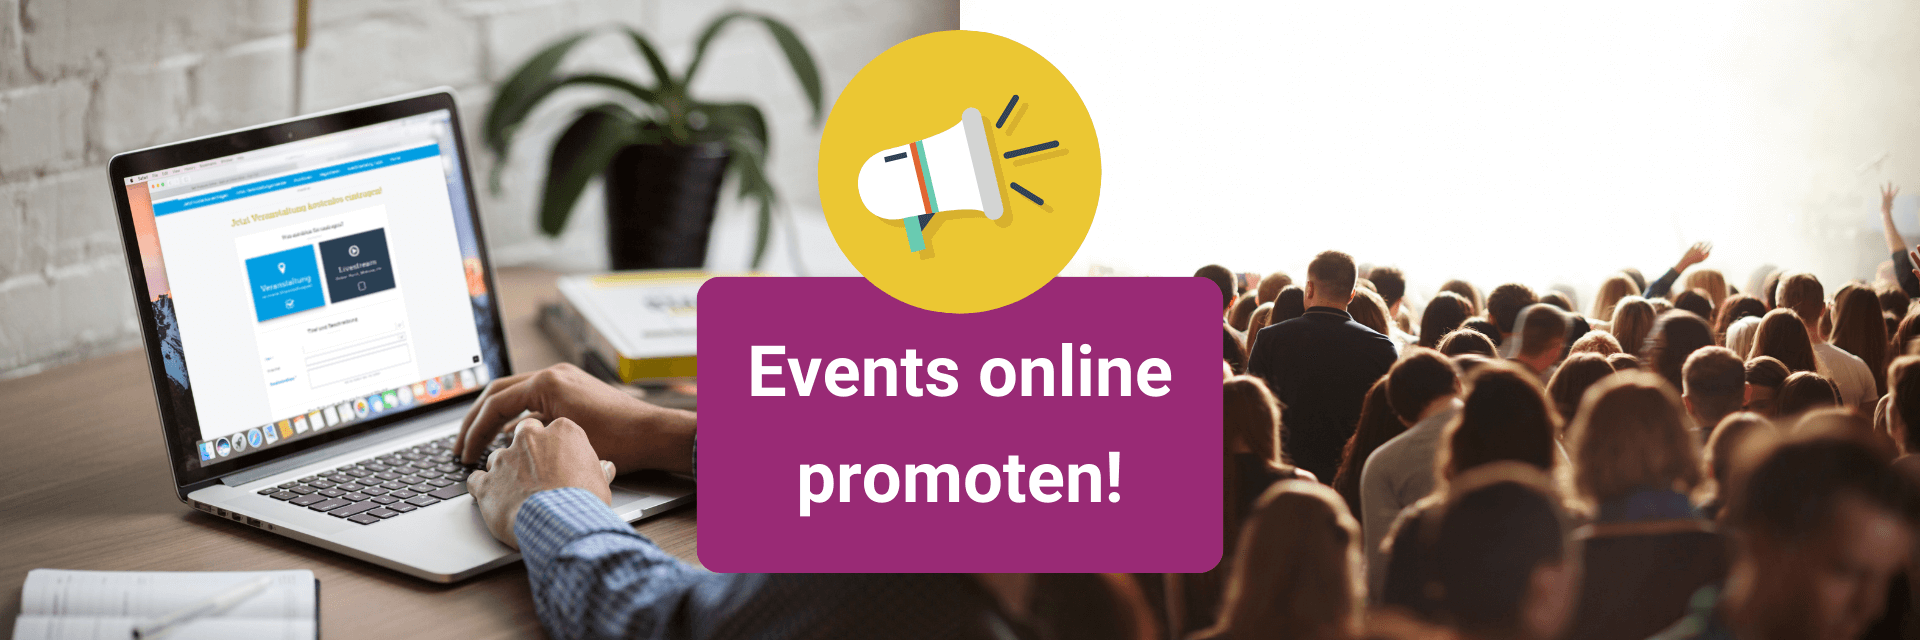 Online event promoten mit eventfinder - Tipps und Tricks